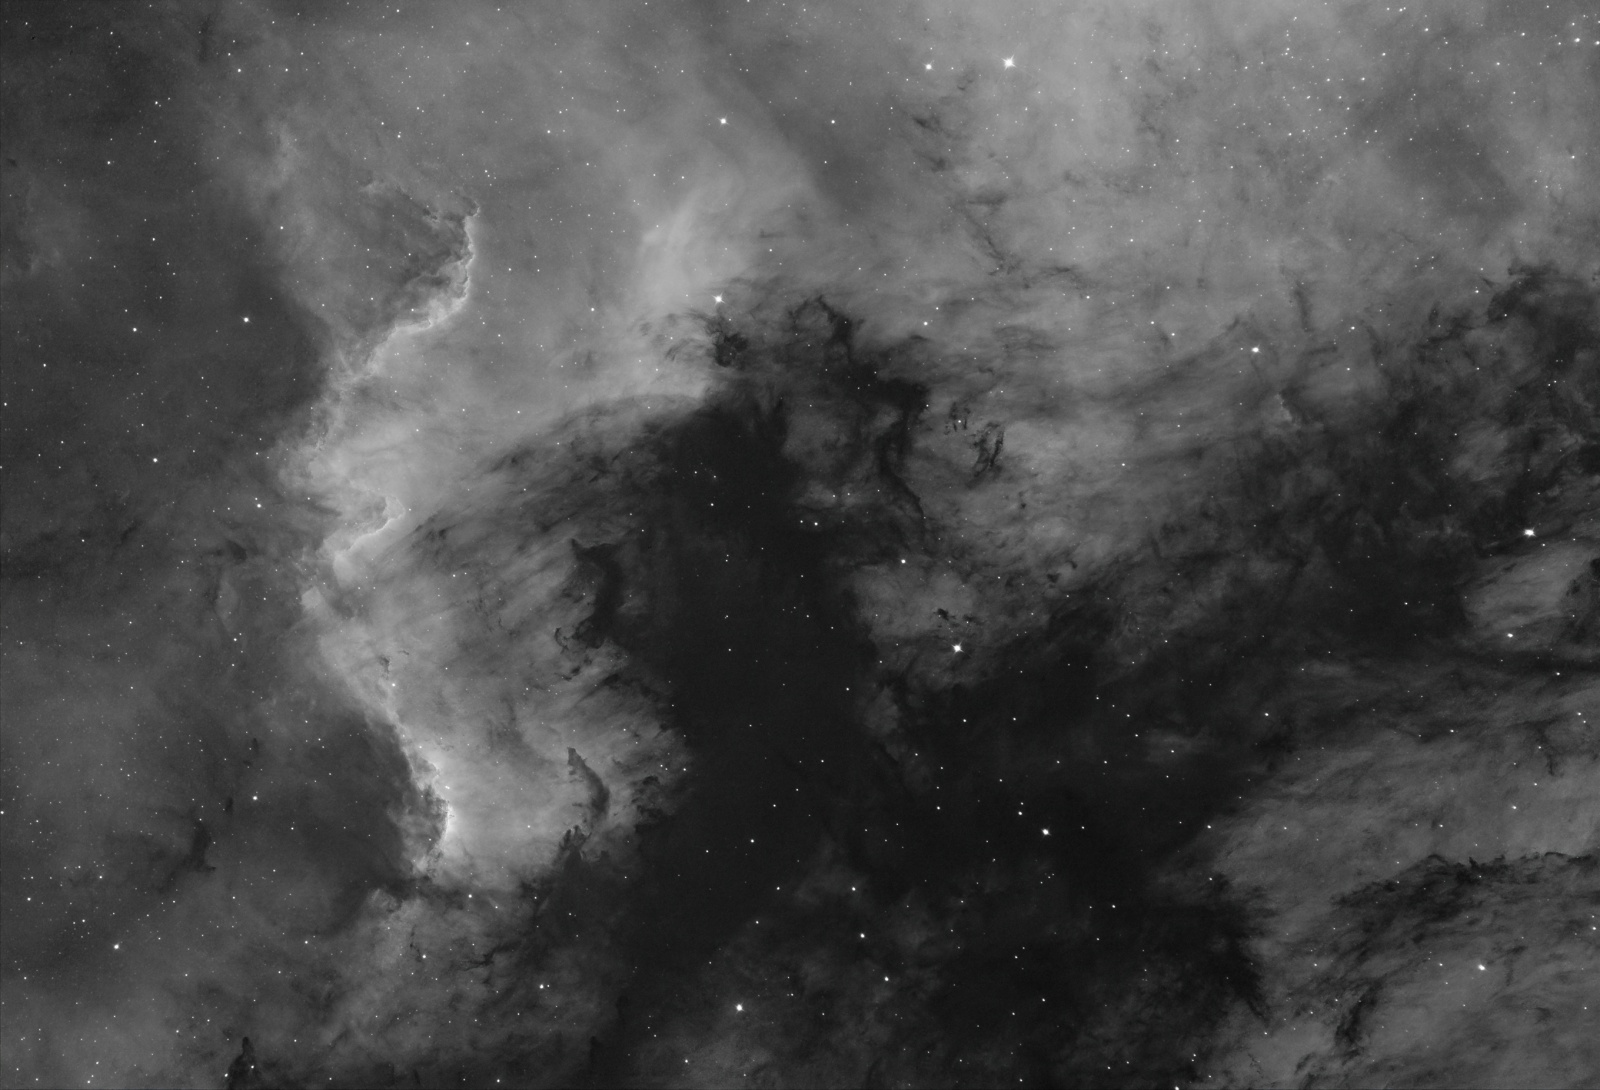 fl_NGC7000_resize66_grey.thumb.jpg.317ce4d0b6545622a55bbcc600b6a899.jpg